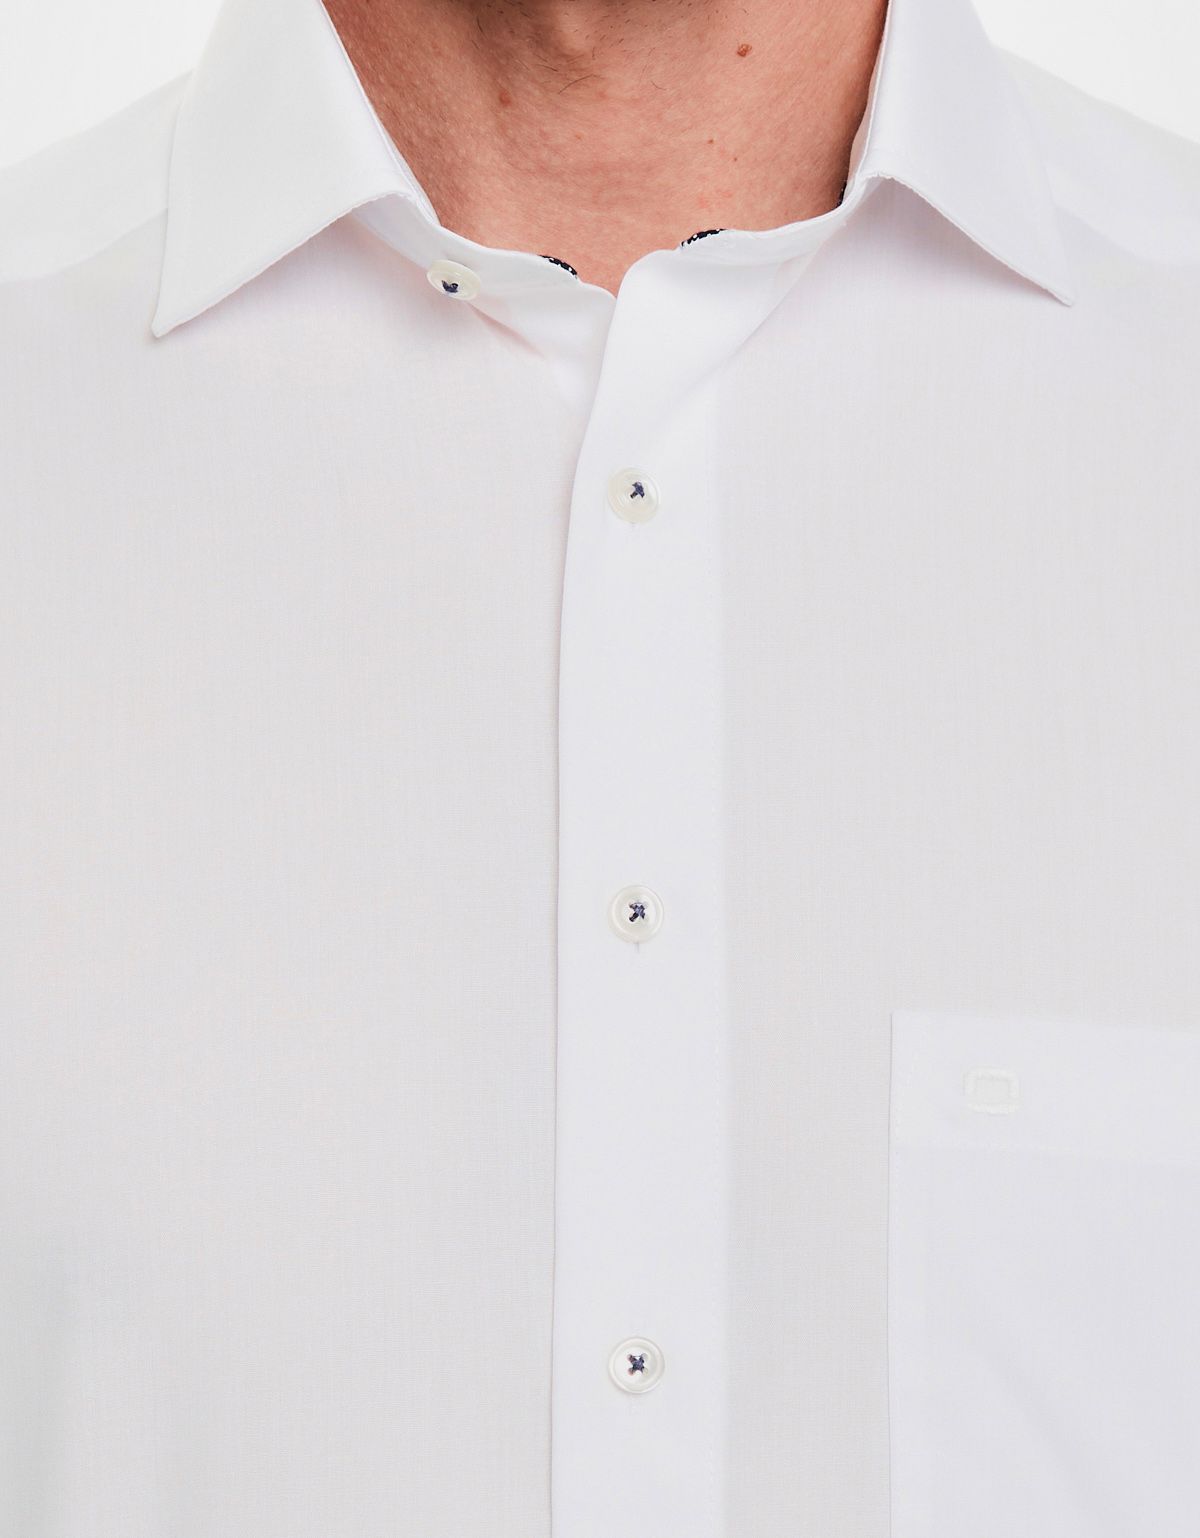 Сорочка мужская классическая с длинным рукавом OLYMP Luxor, modern fit | купить в интернет-магазине Olymp-Men